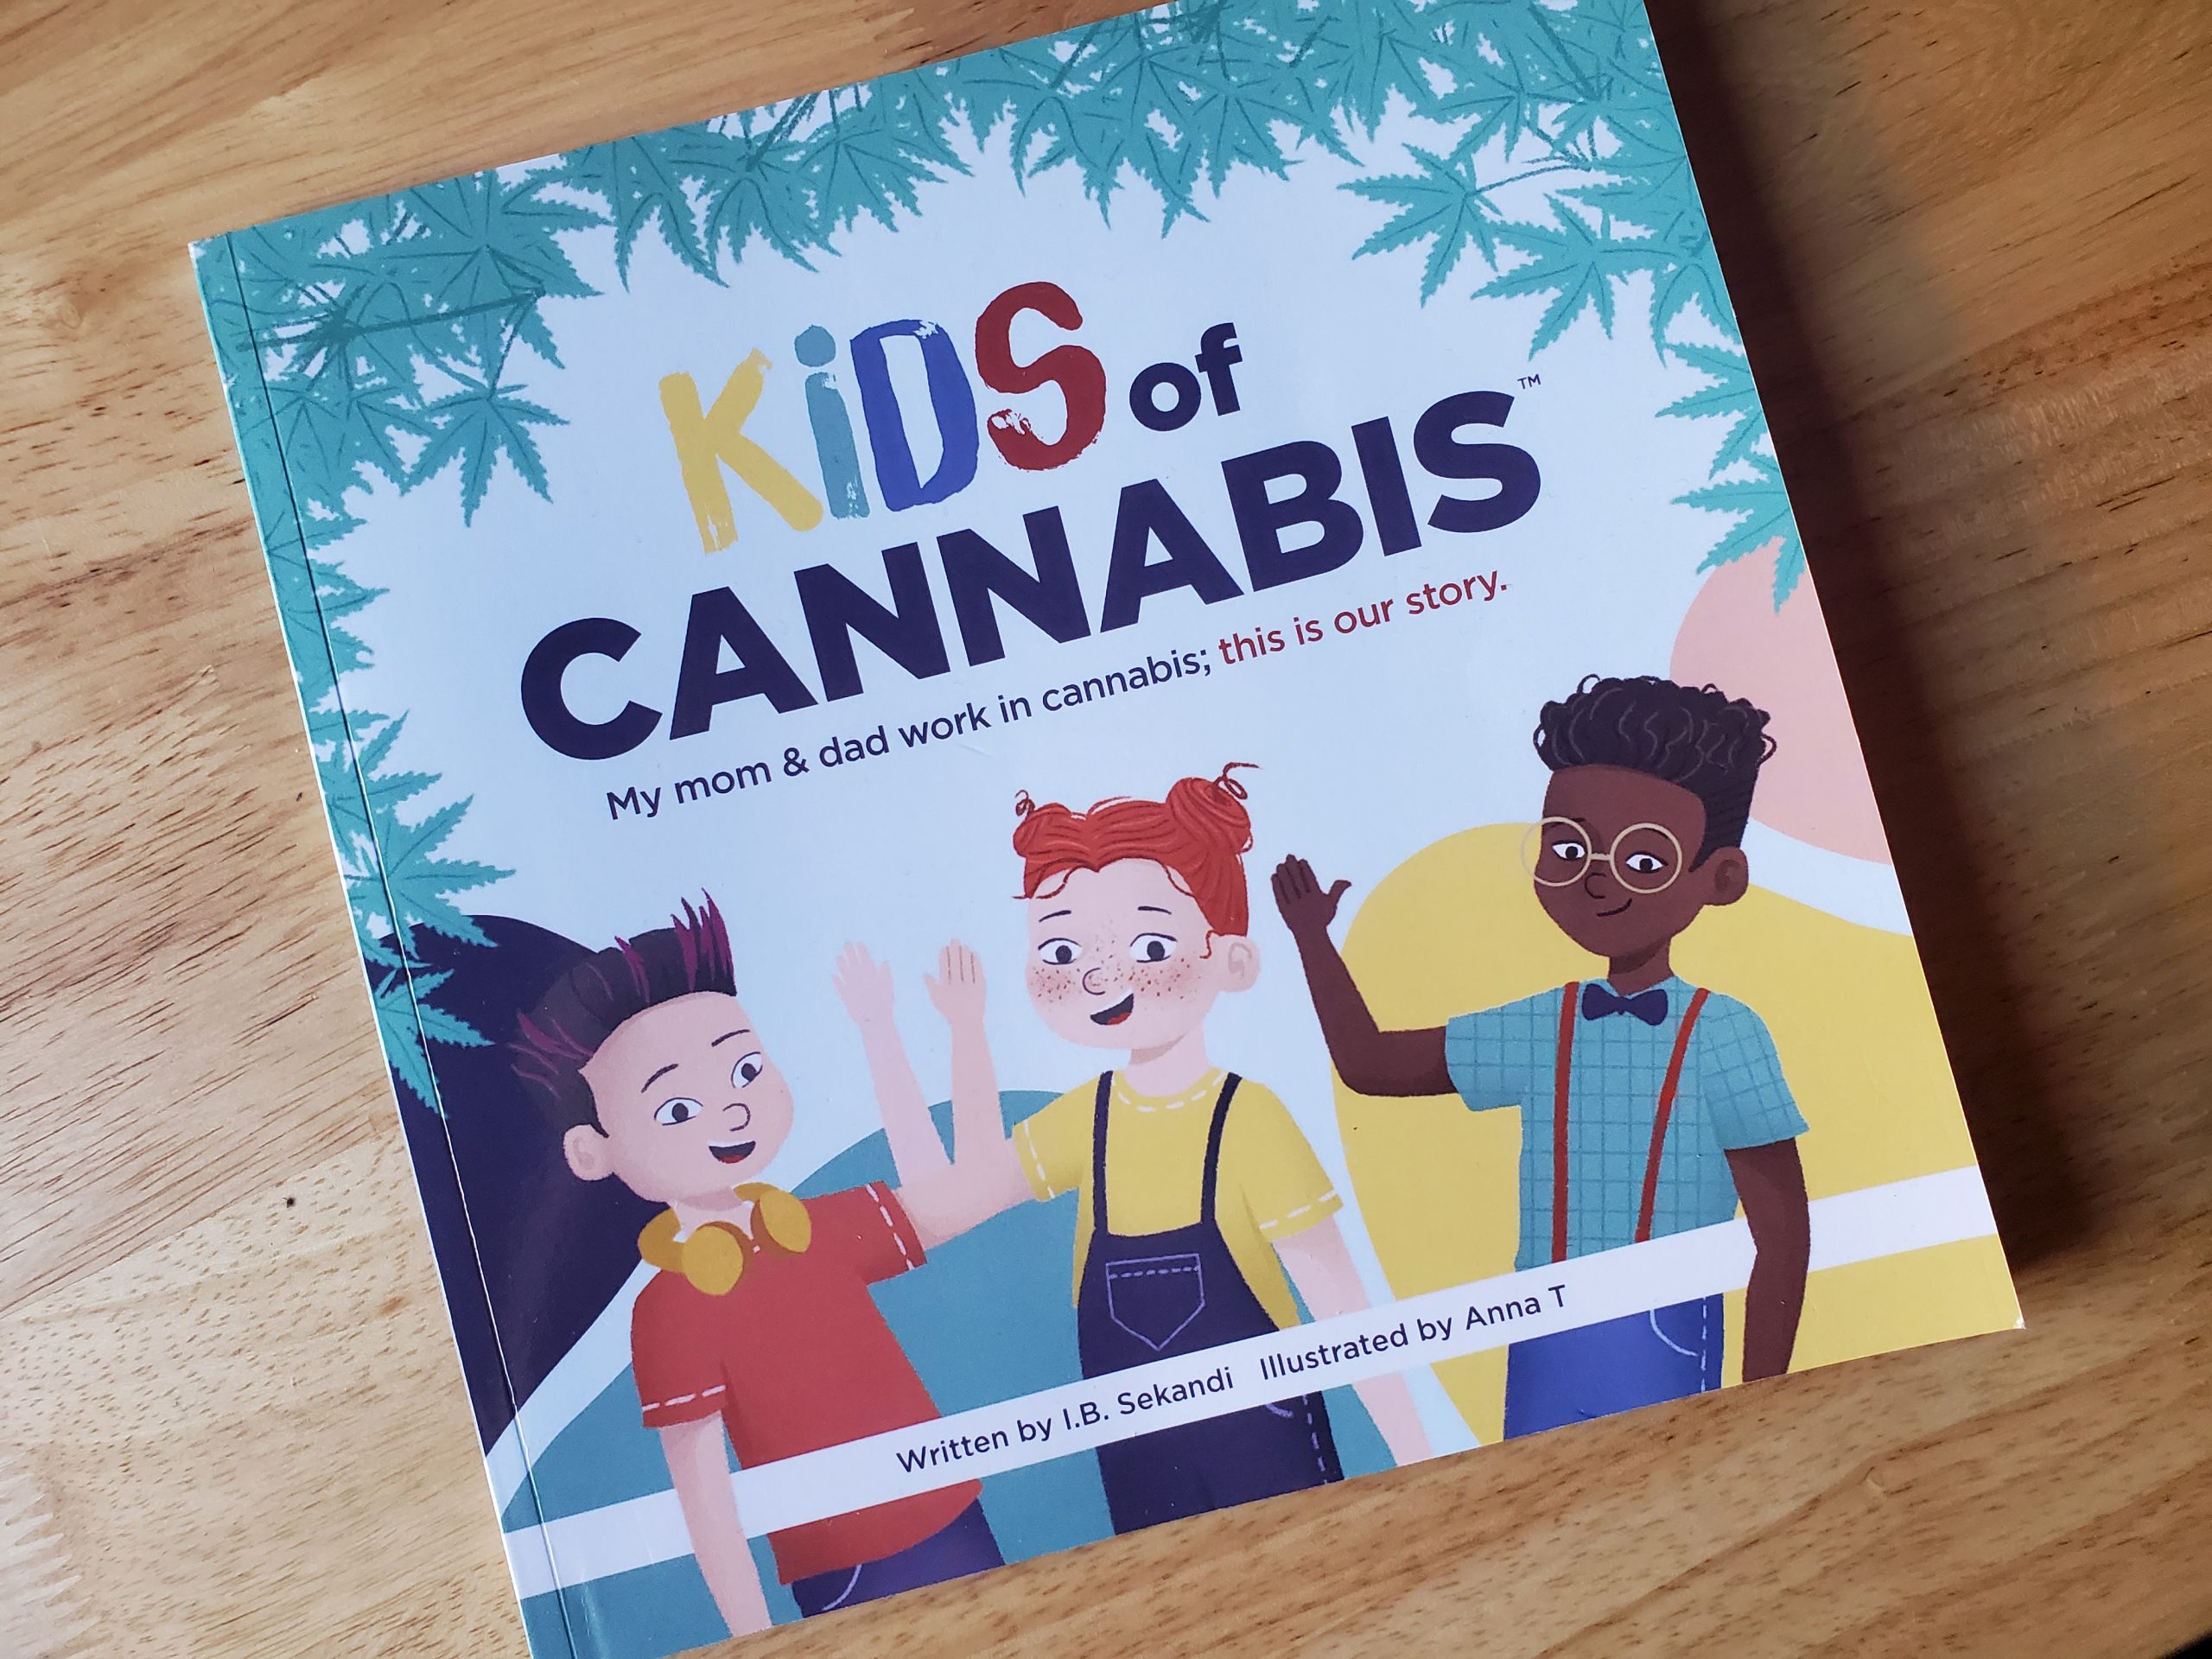 Review: I.B. Sekandi's Kids of Cannabis